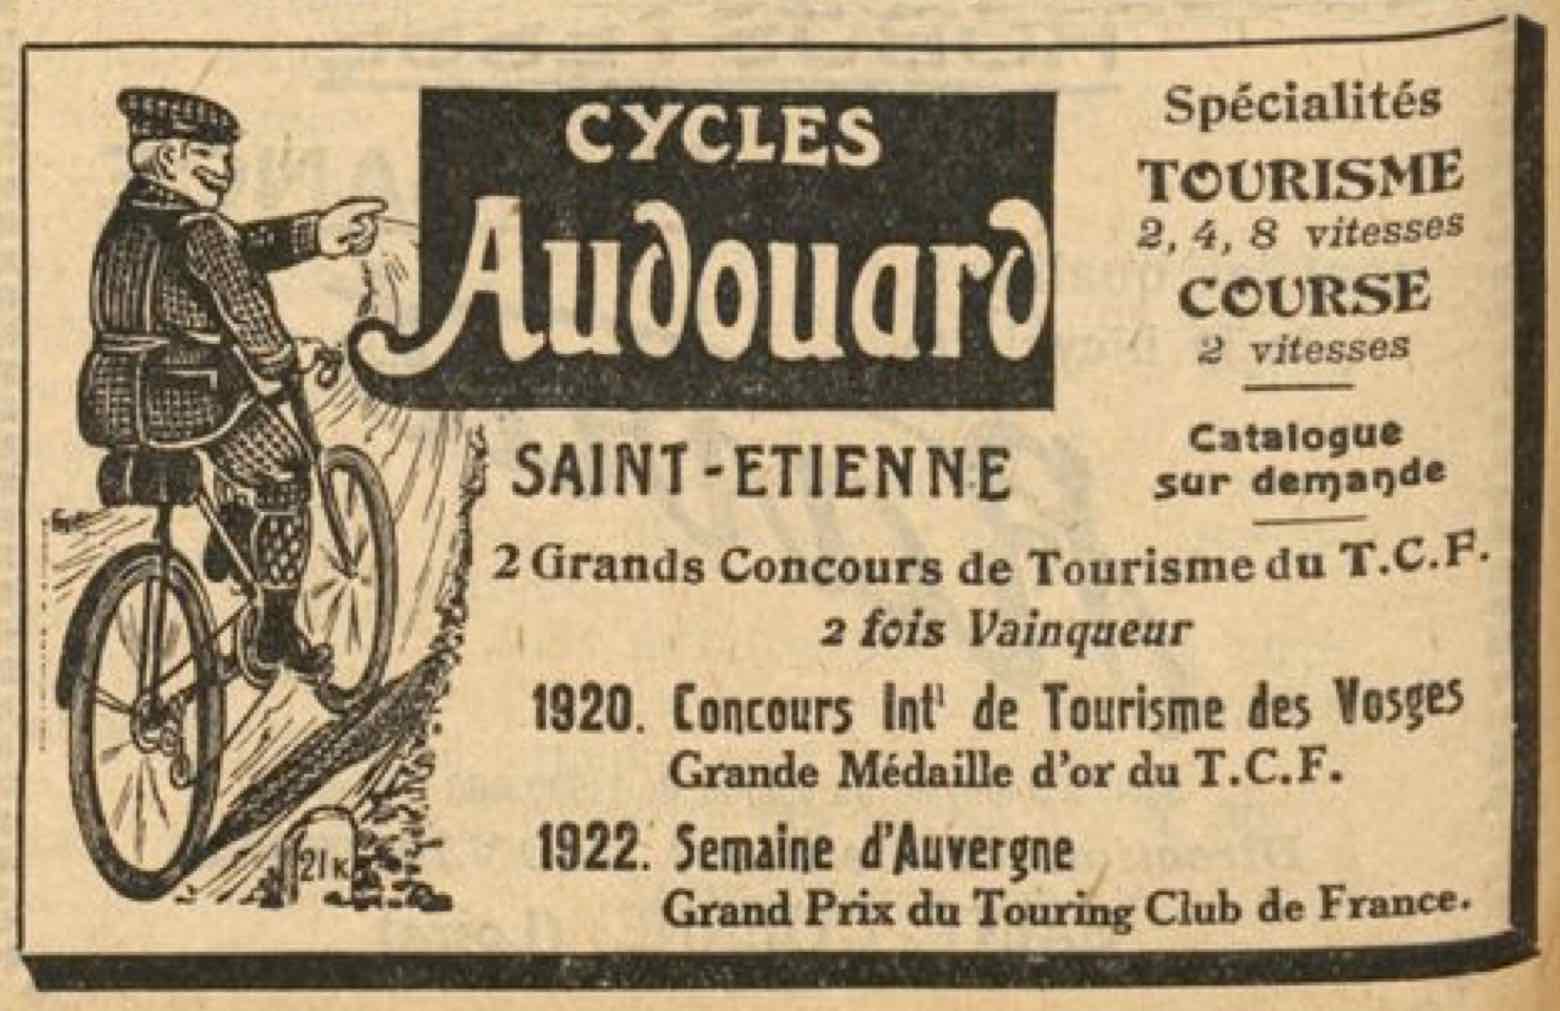 T.C.F. Revue Mensuelle April 1923 - Audouard advert main image